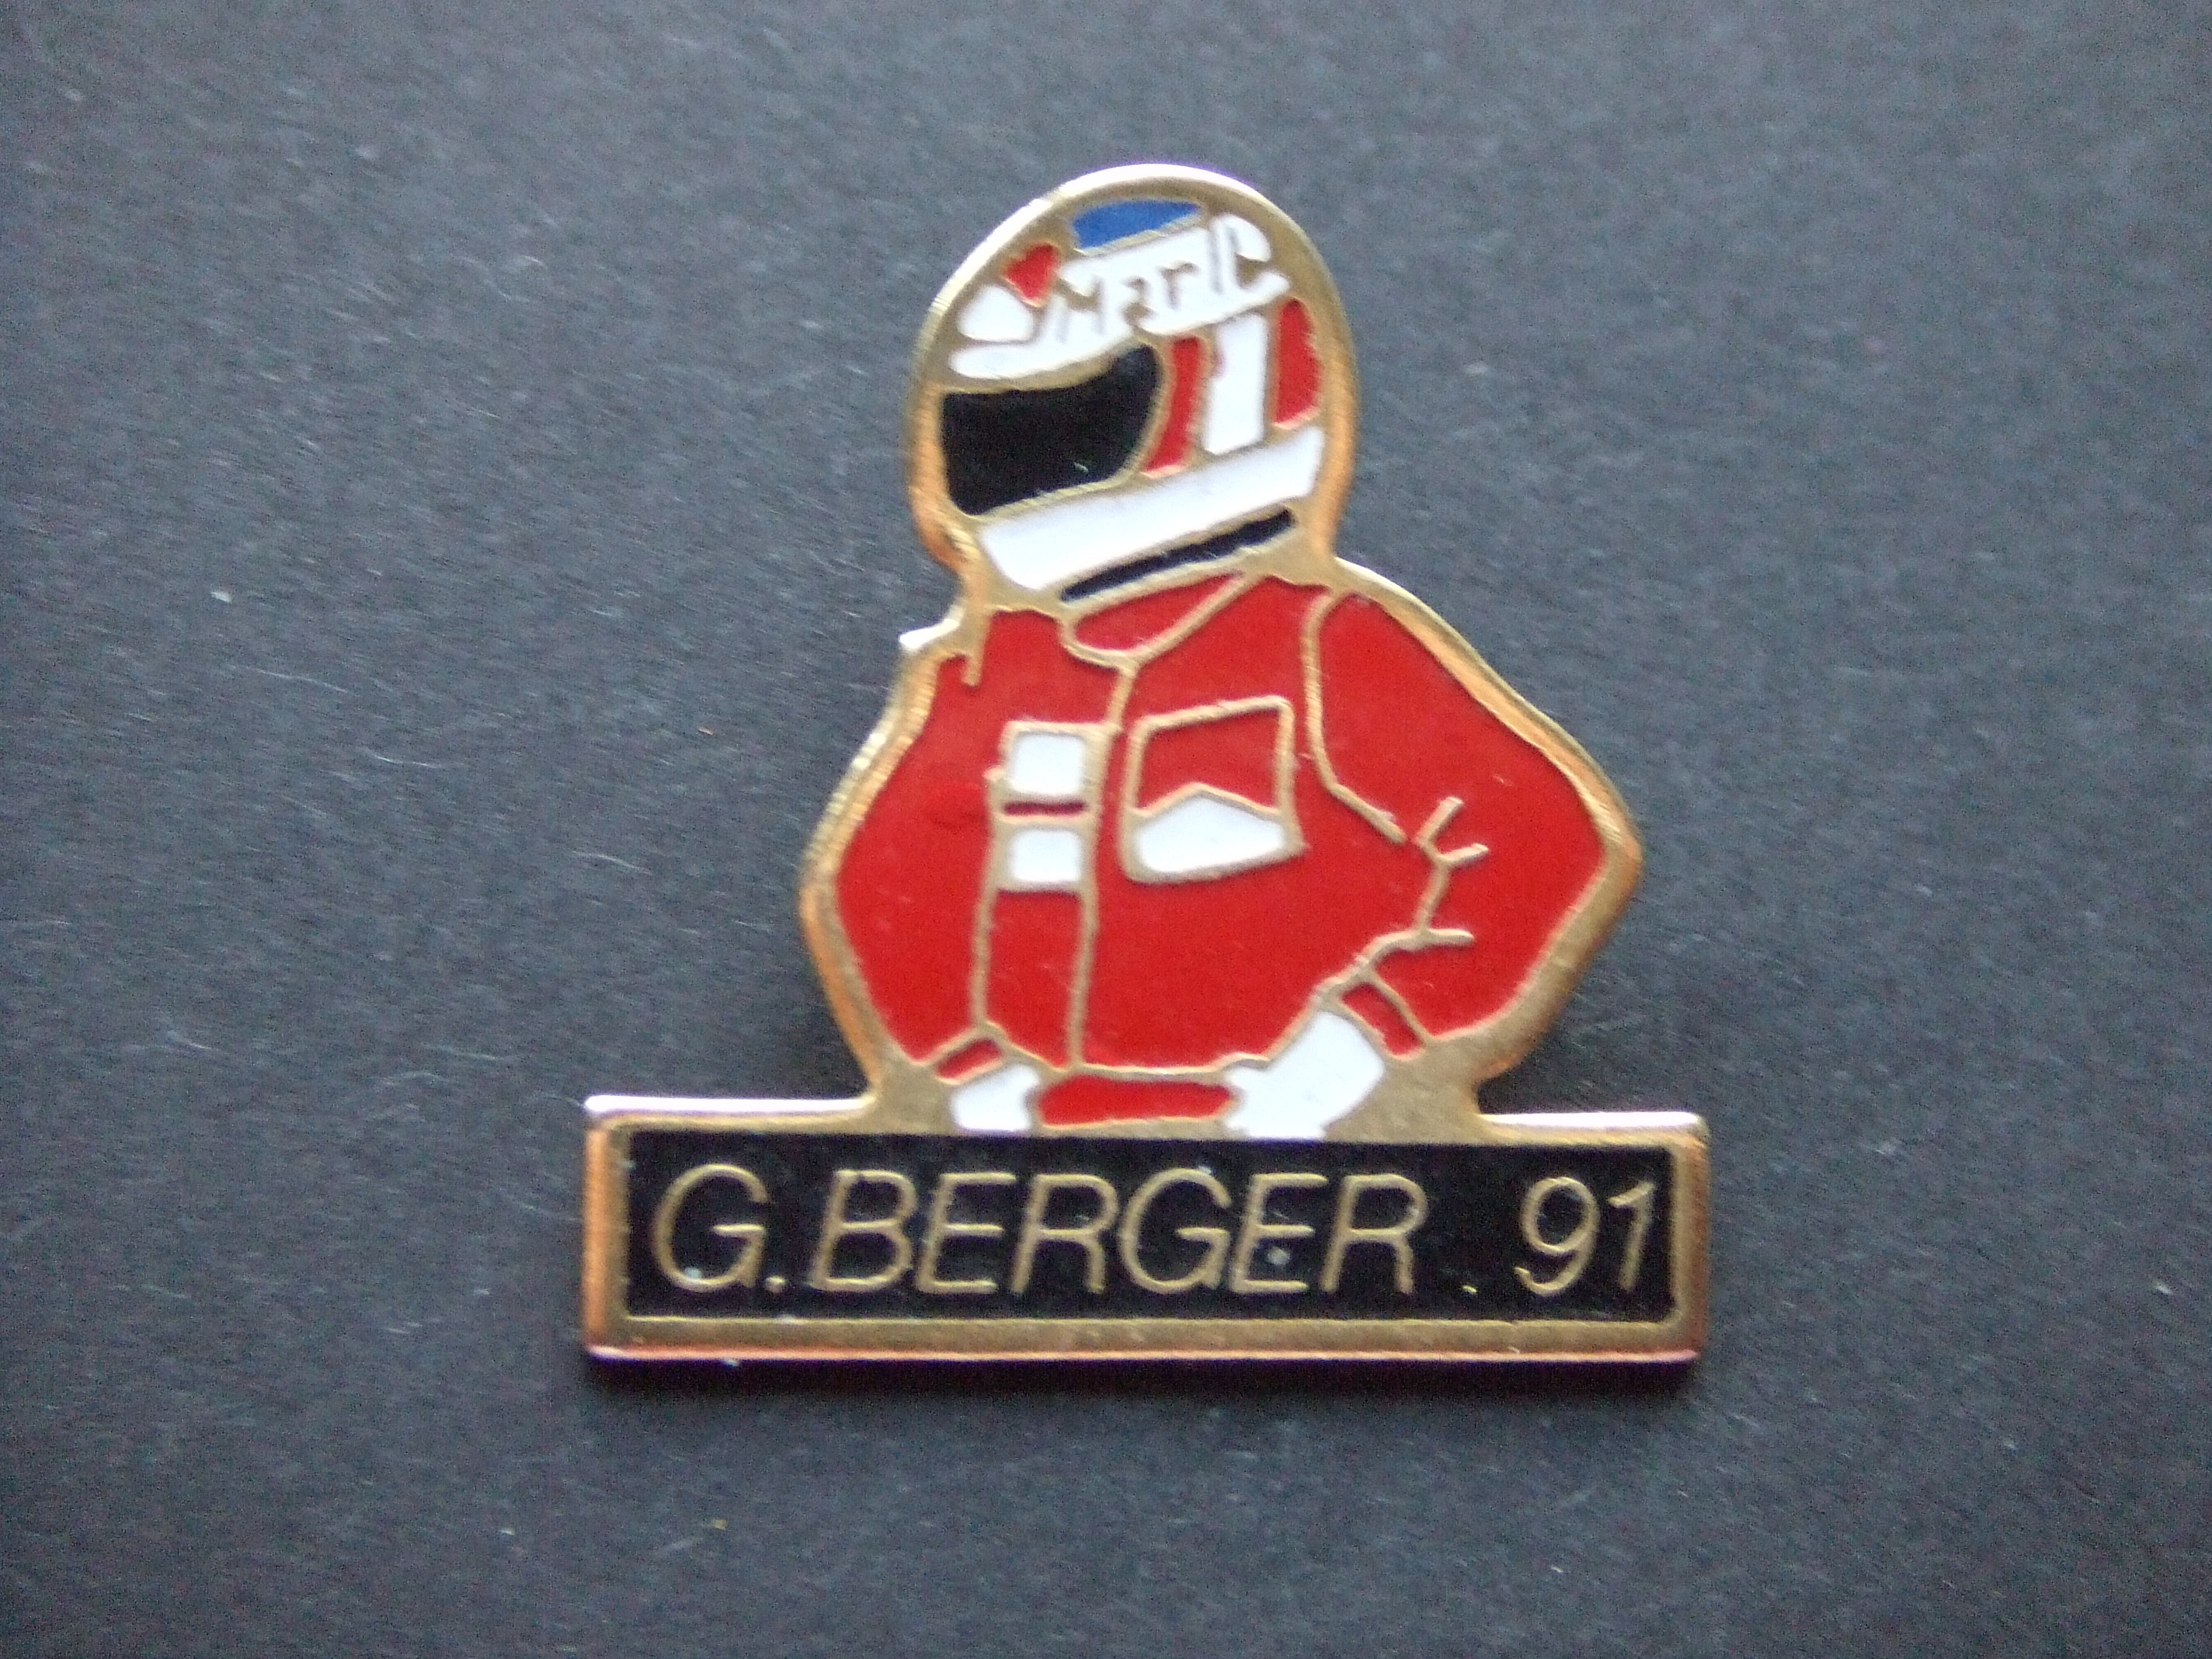 Gerhard Berger voormalig Oostenrijks Formule 1 coureur